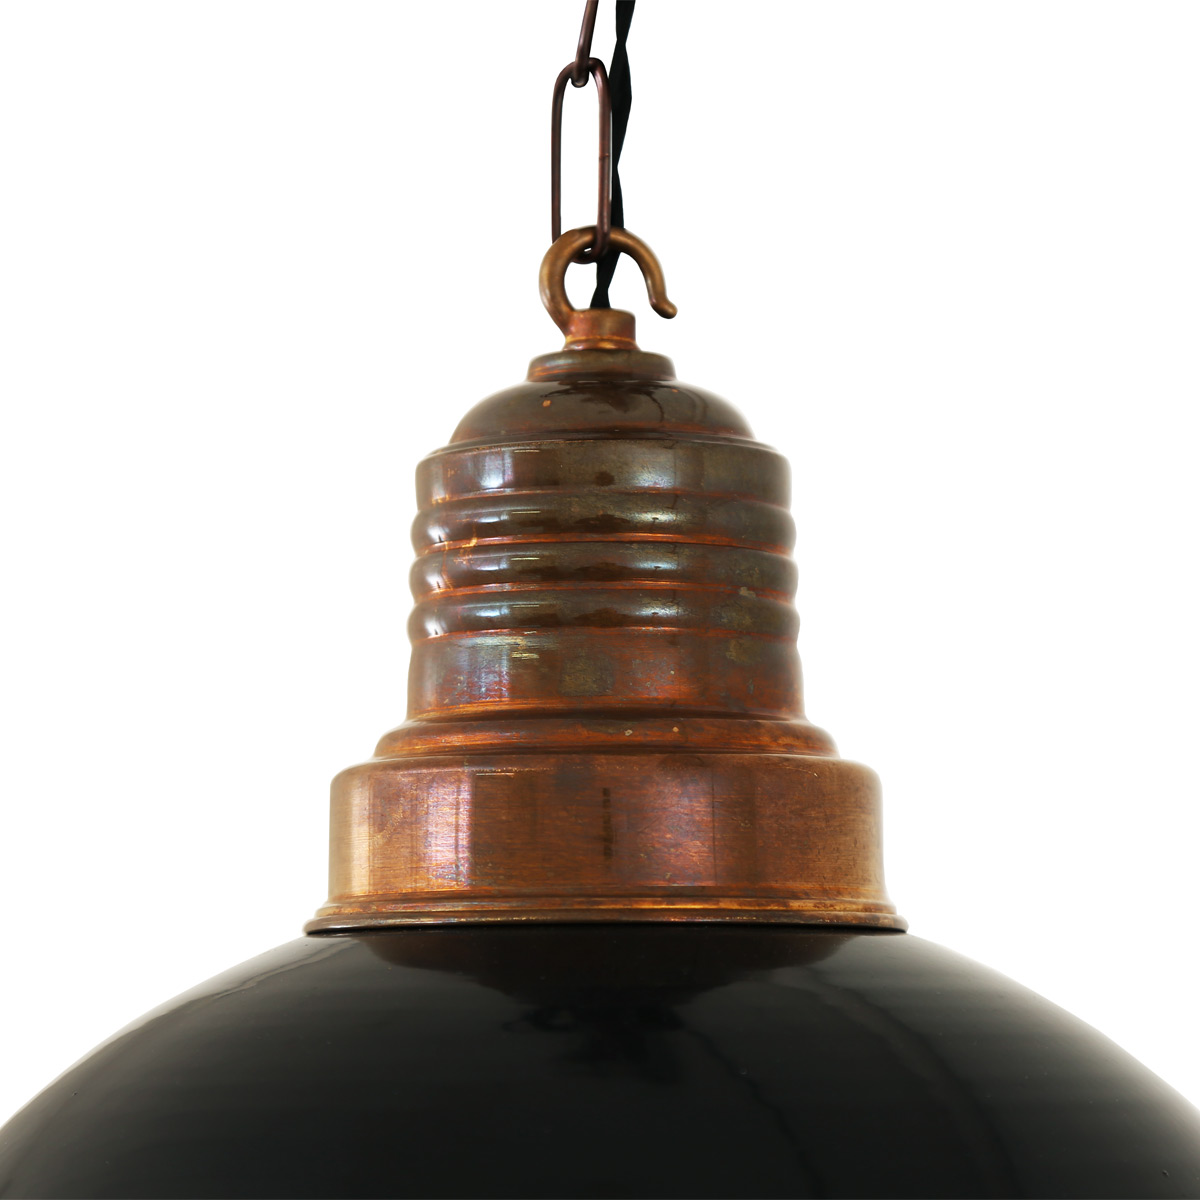 Nostalgische Fabriklampe mit Kettenaufhängung: schwarz glanz mit Messingteilen in „Alt-Messing patiniert“